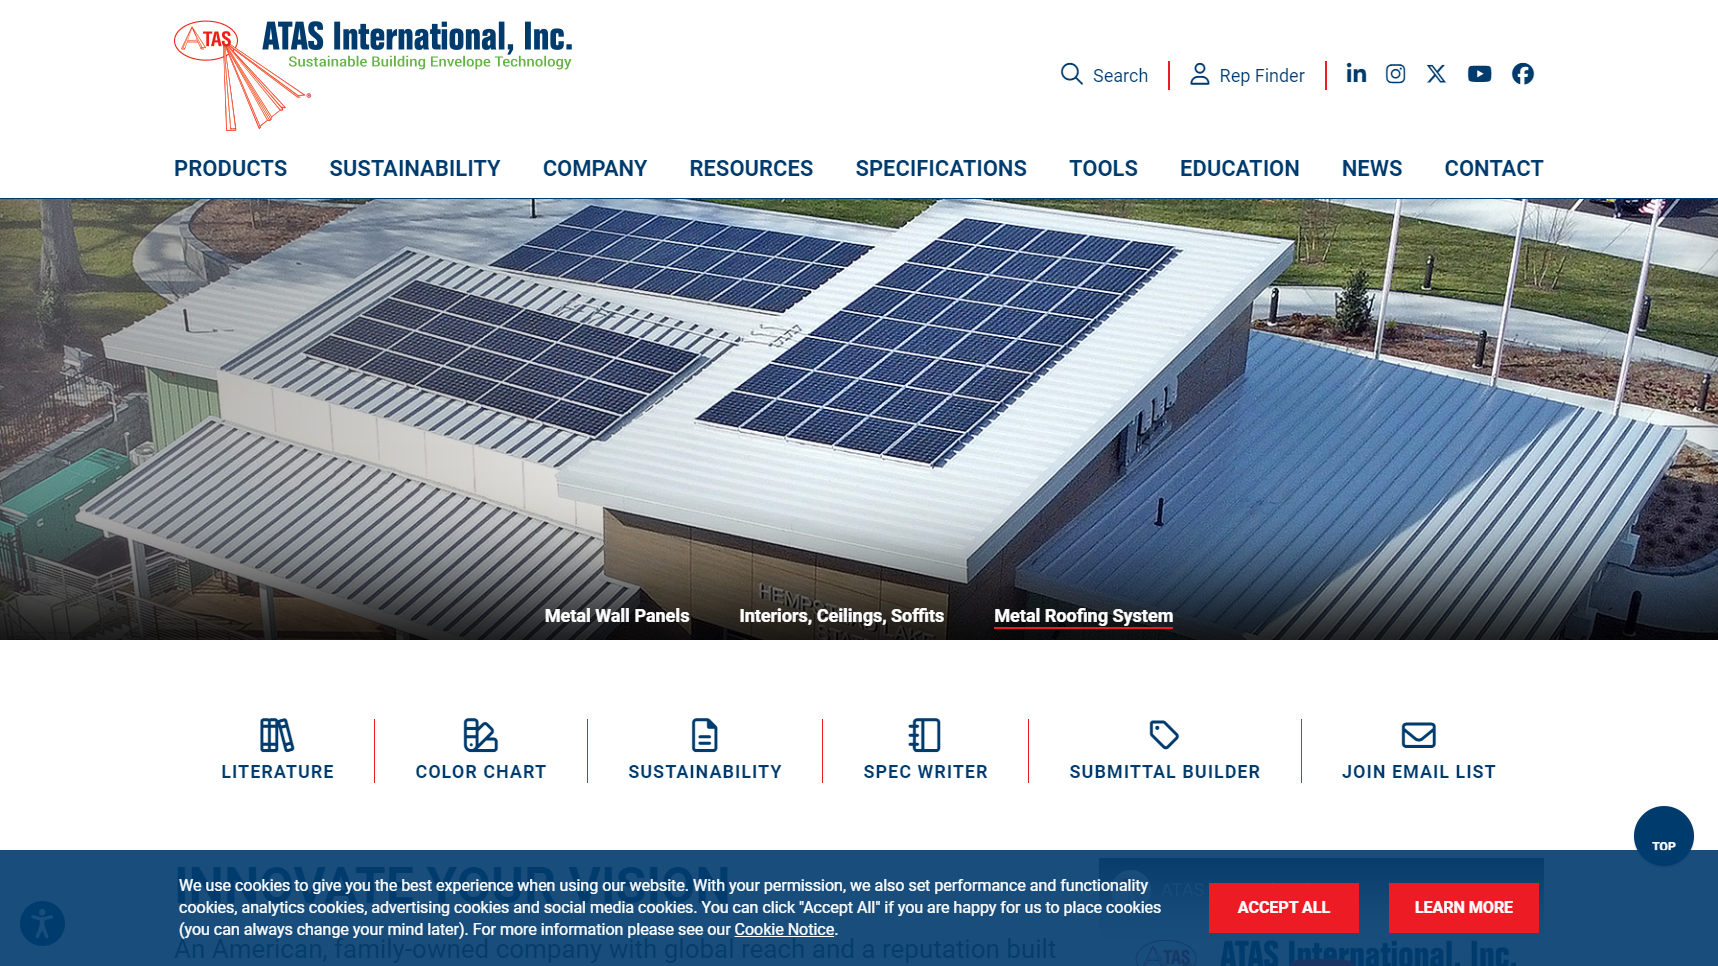 ATAS International, Inc. - Metal Roofing Manufacturer